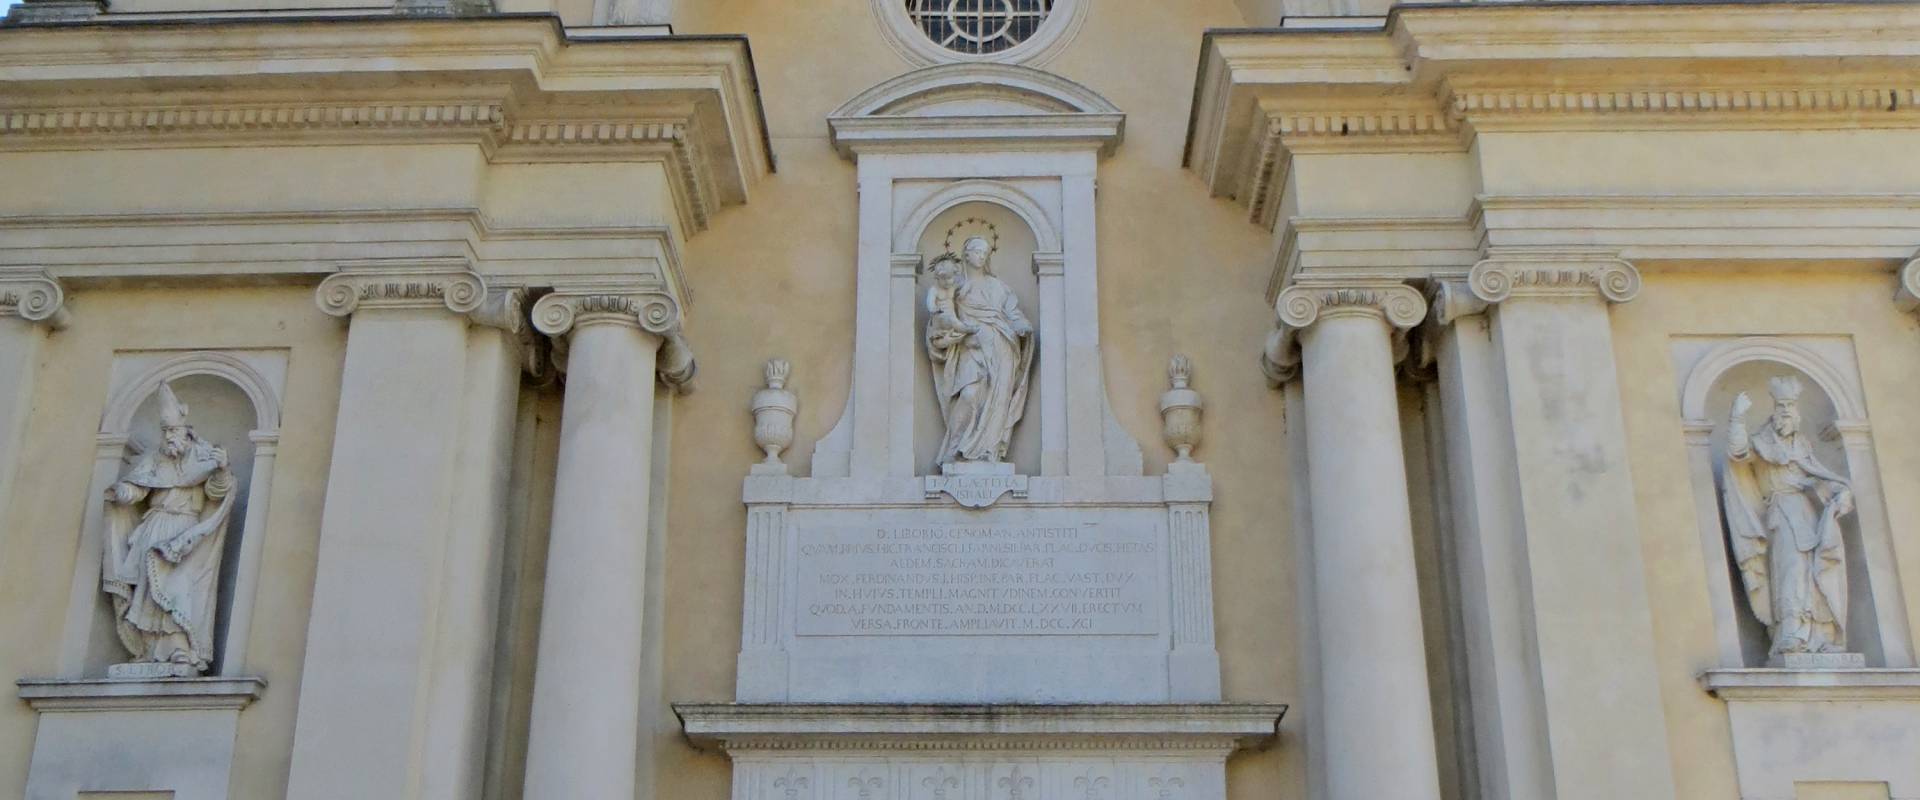 Cappella ducale di San Liborio (Colorno) - facciata 1 2019-06-20 photo by Parma198